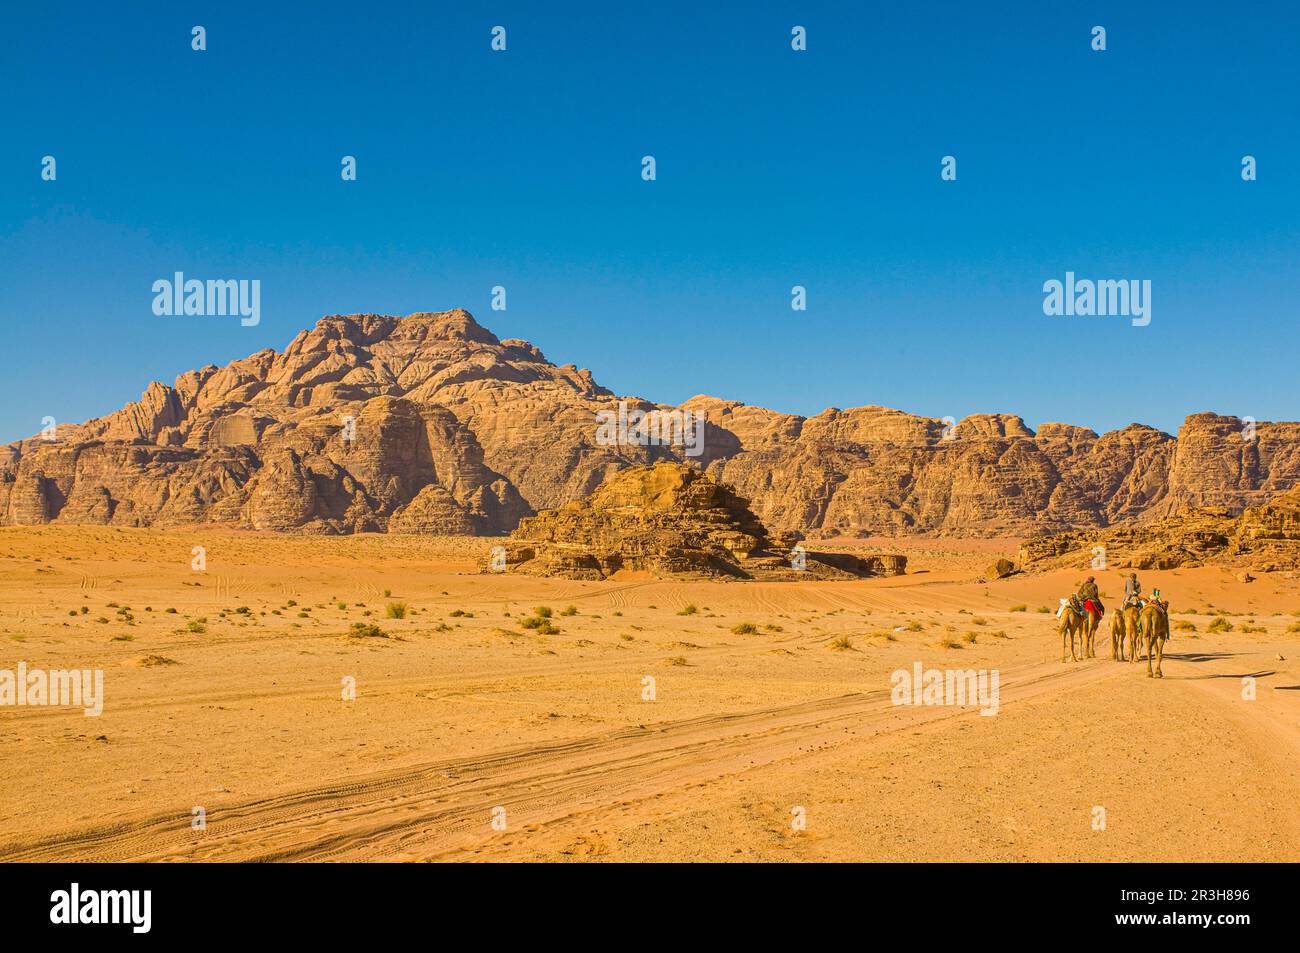 Bédouins avec chameaux dans le désert, Wadi Rum, Jordanie Banque D'Images